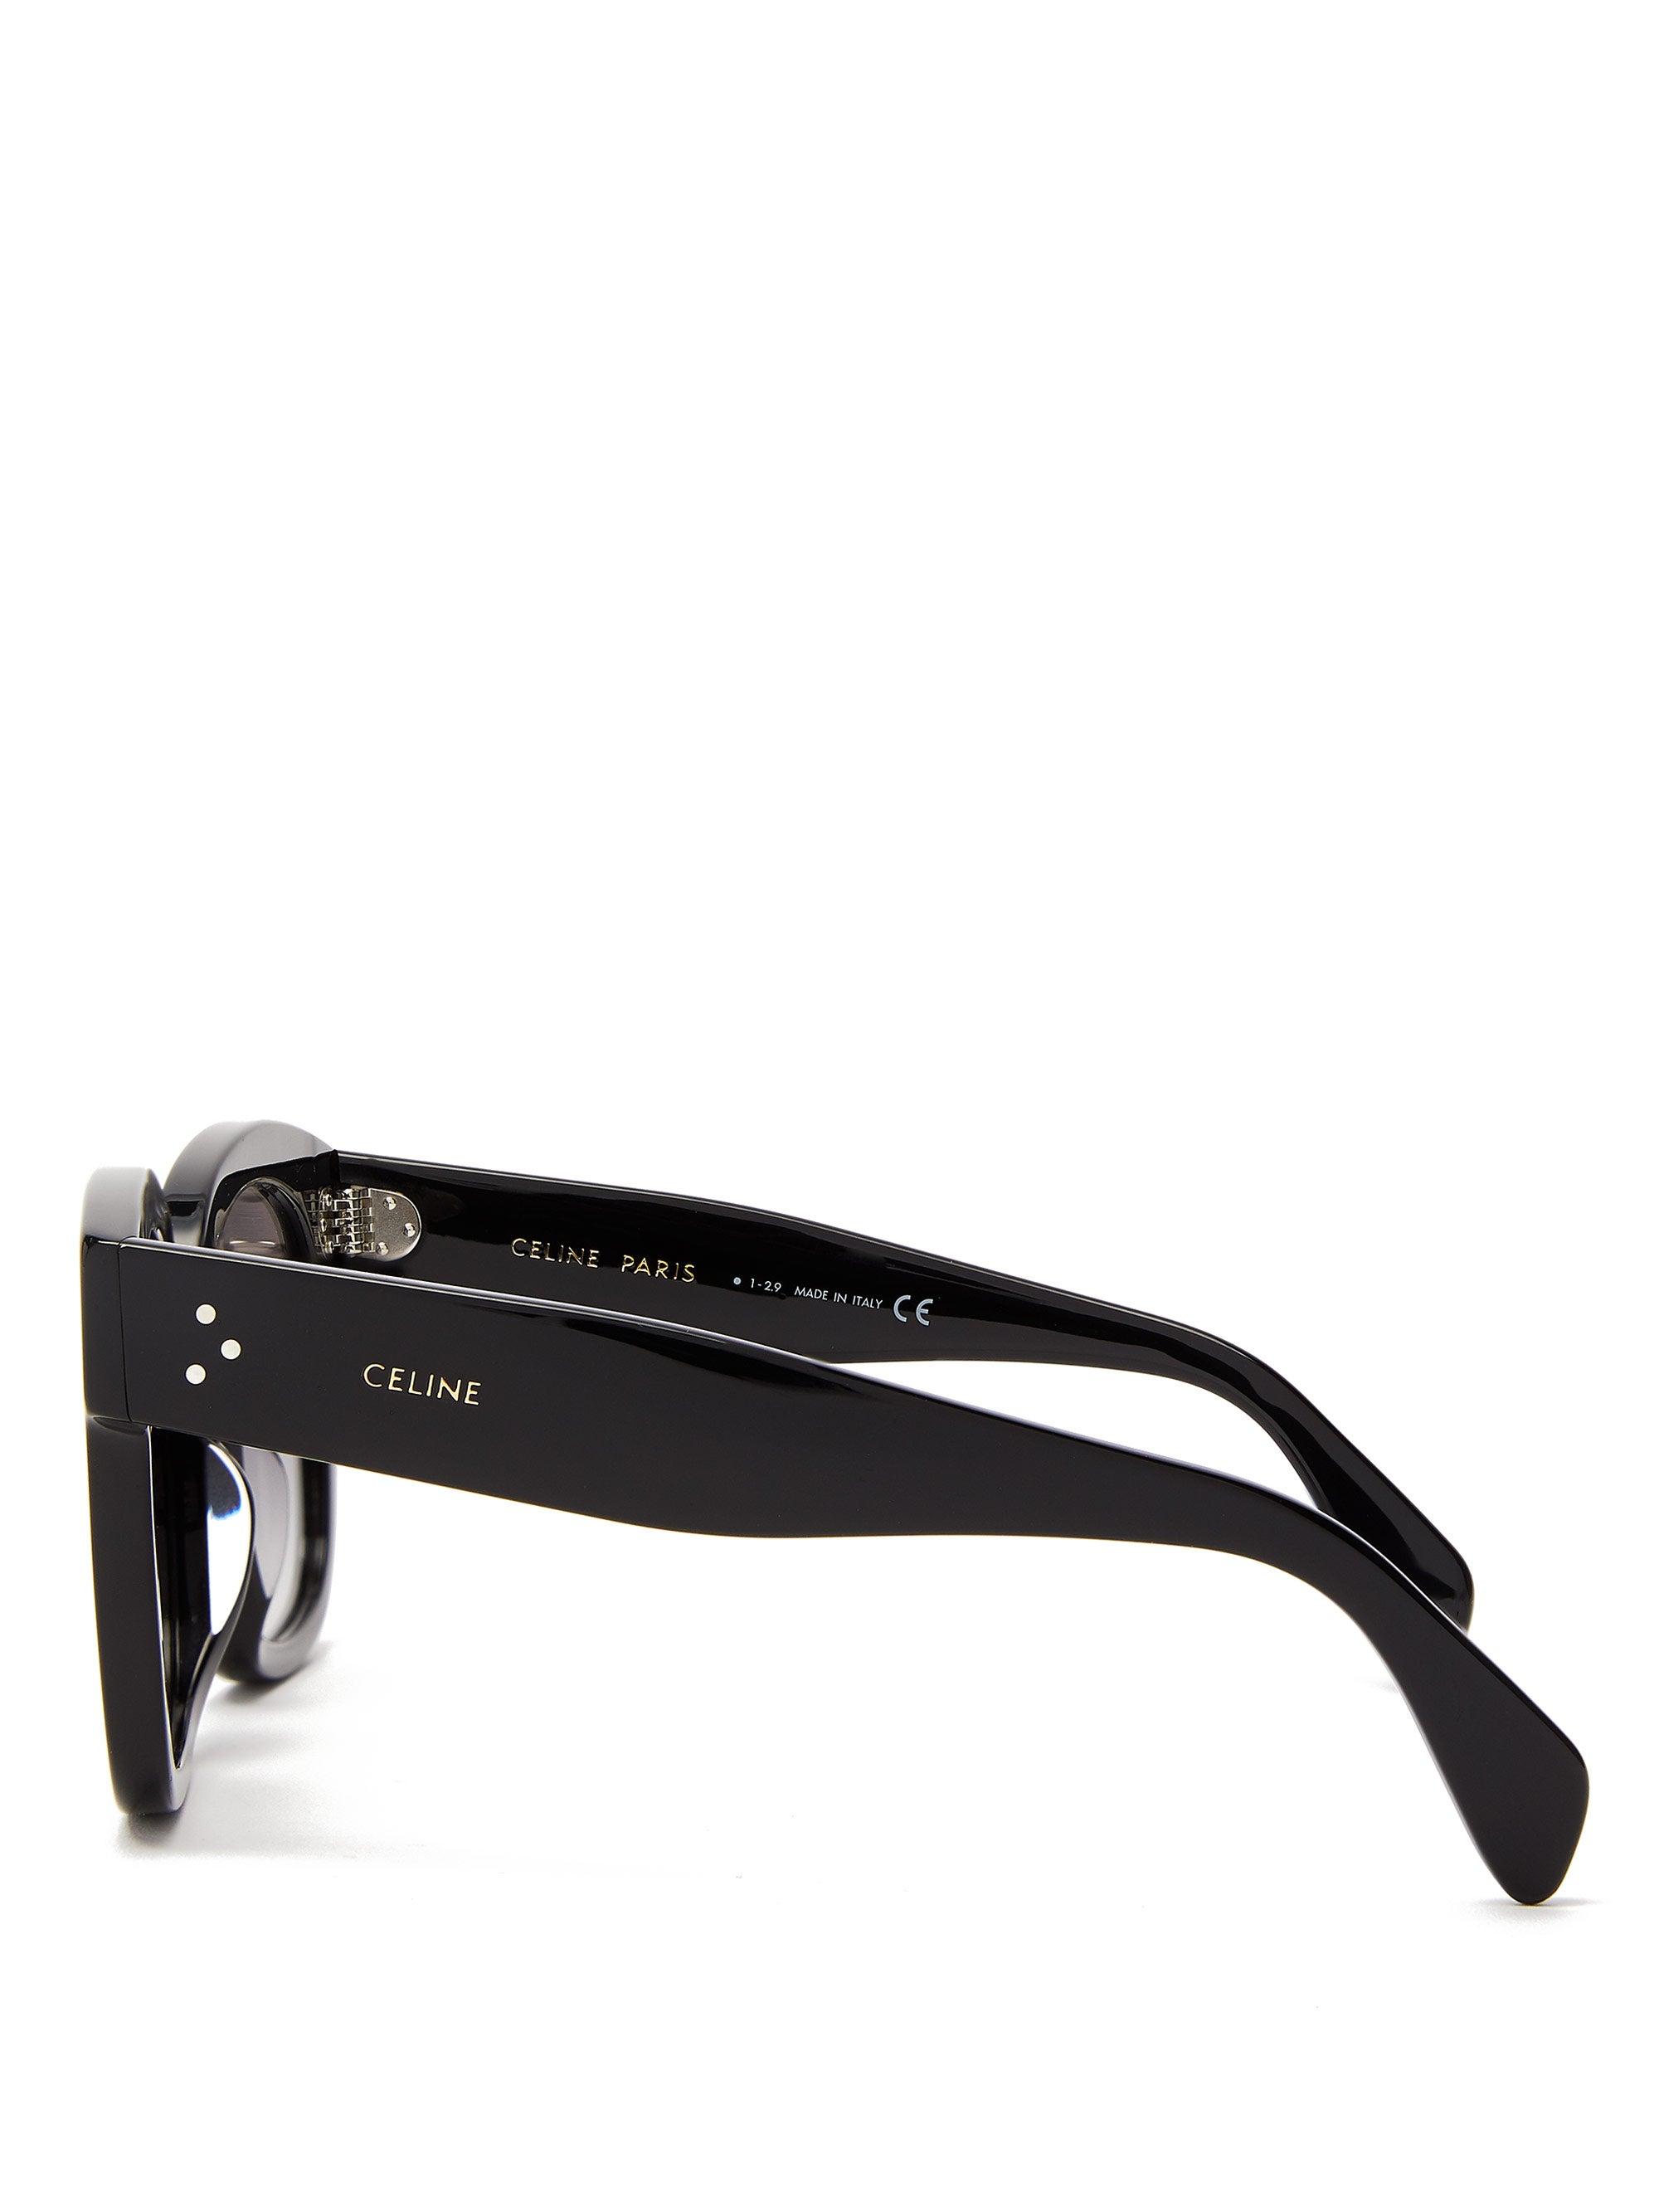 Celine Square Acetate Sunglasses in Black | Lyst